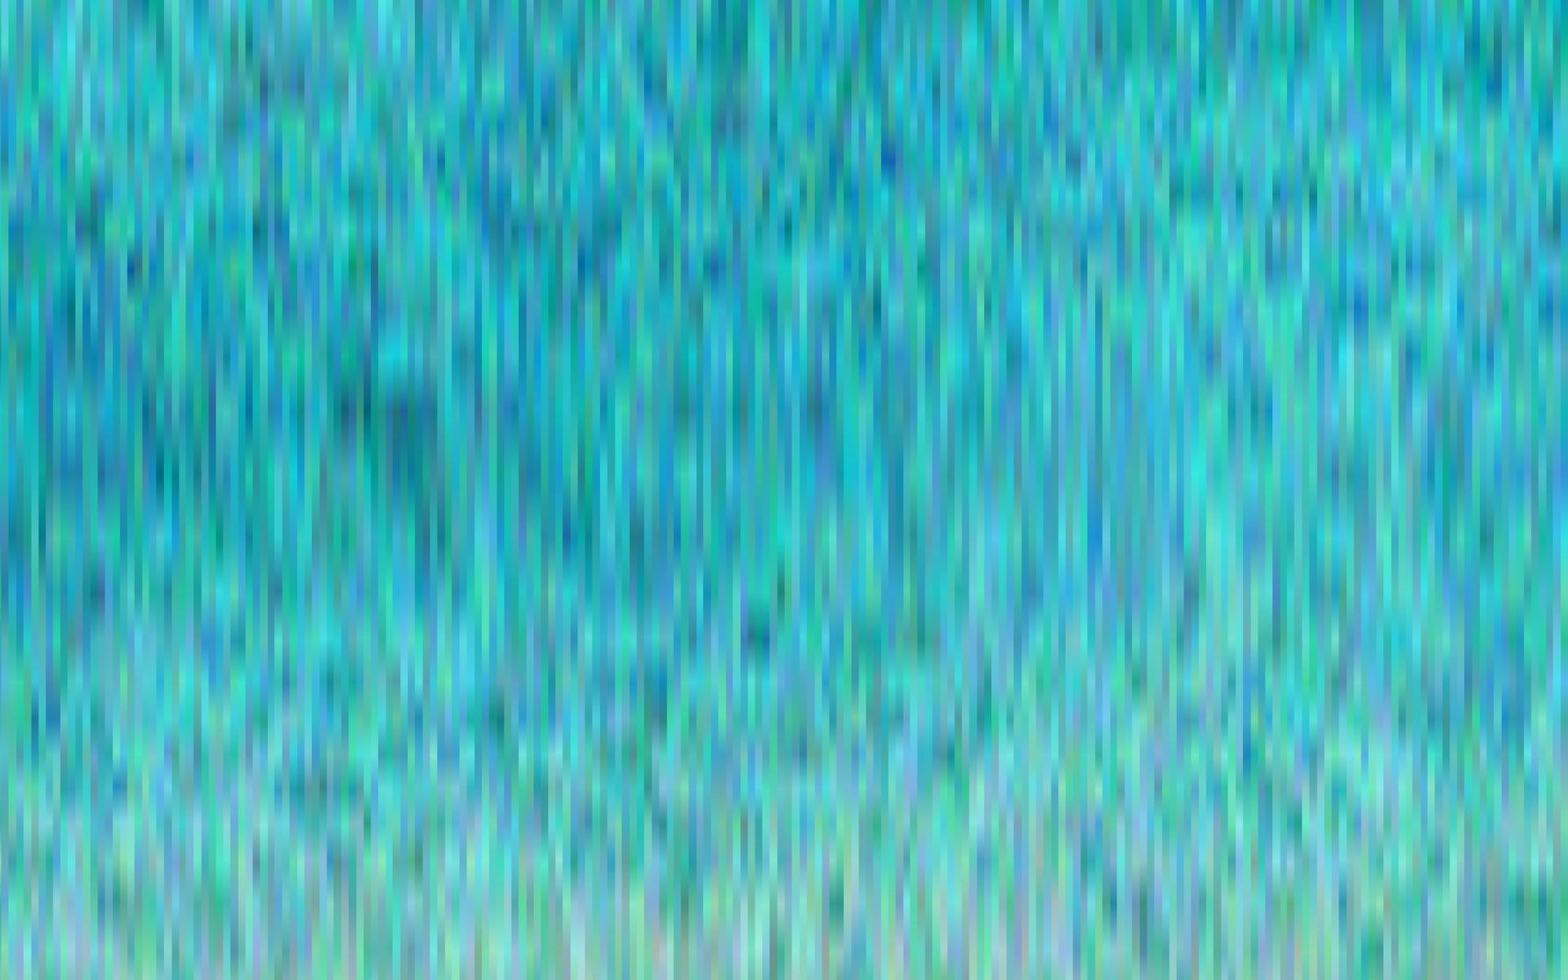 sfondo vettoriale azzurro con linee rette.